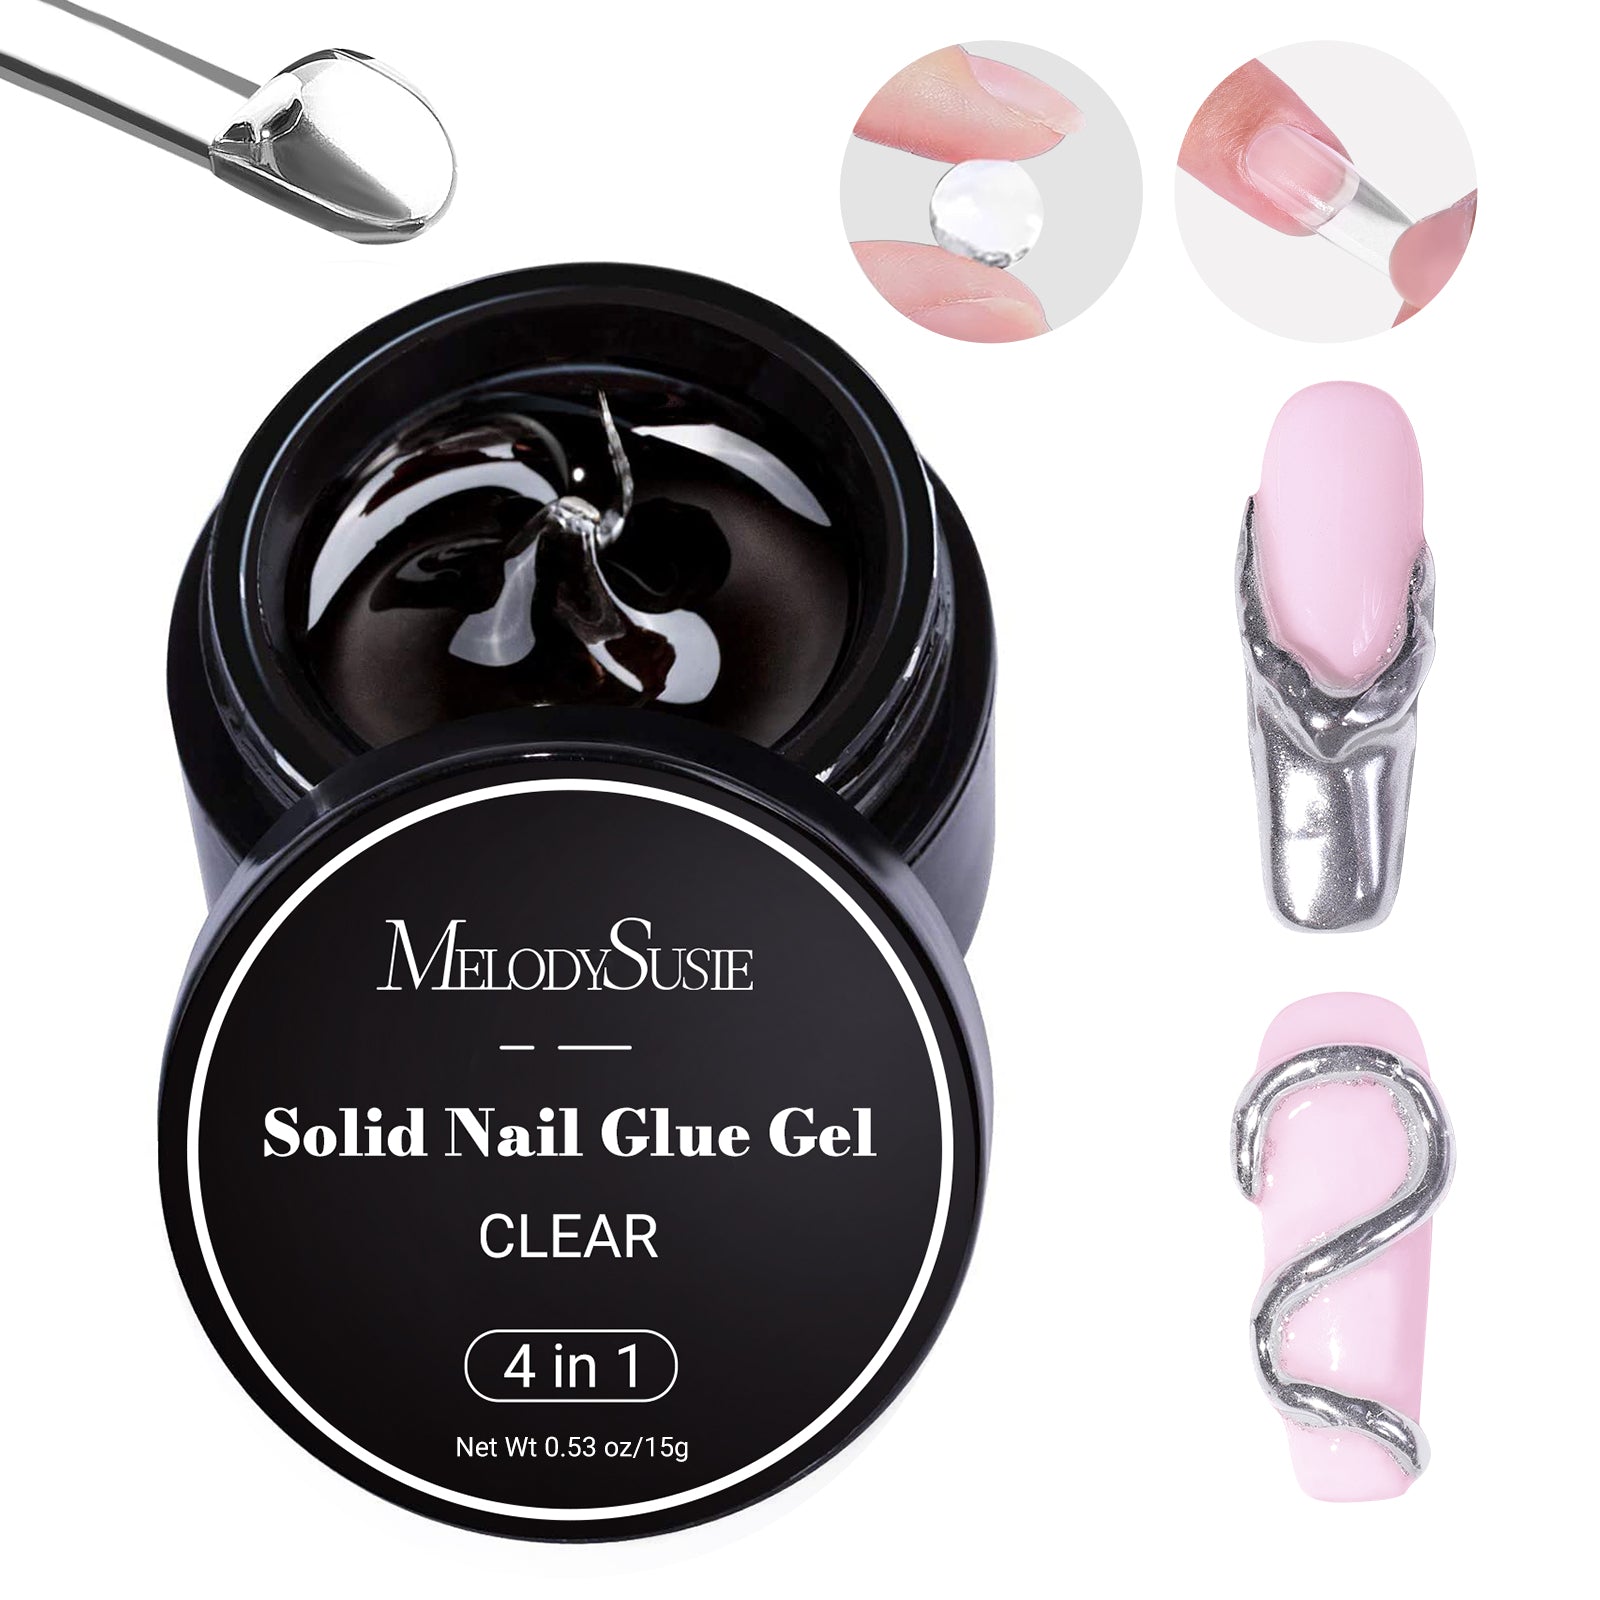 15g Solid Nail Glue Gel